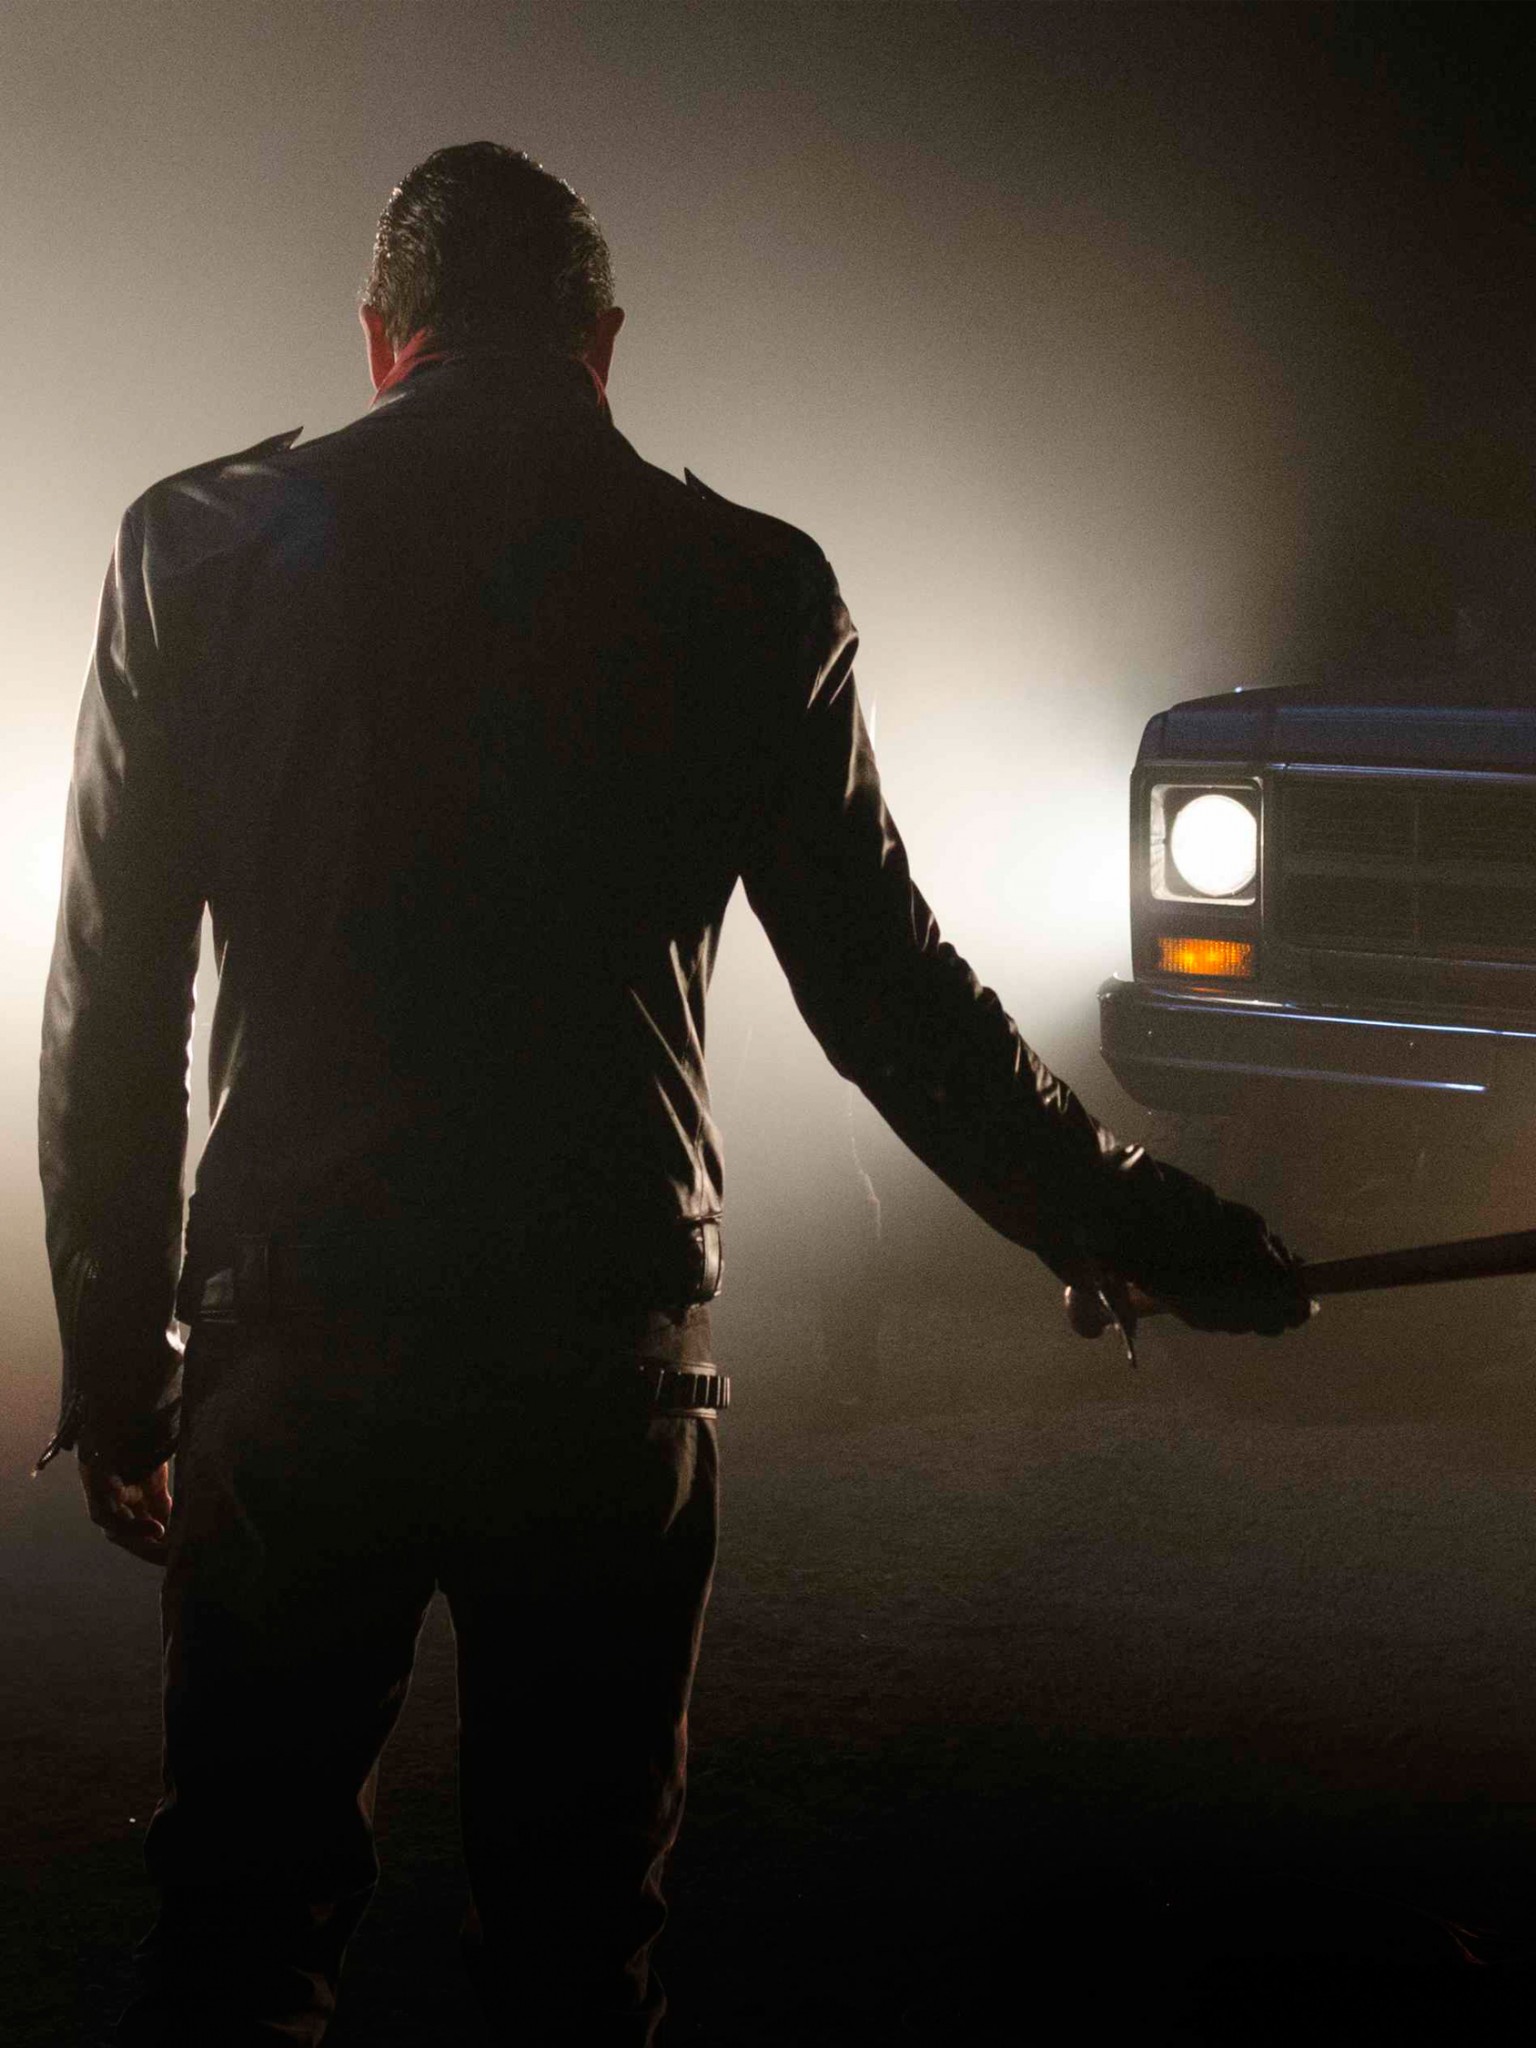 Negan Walking Dead , HD Wallpaper & Backgrounds